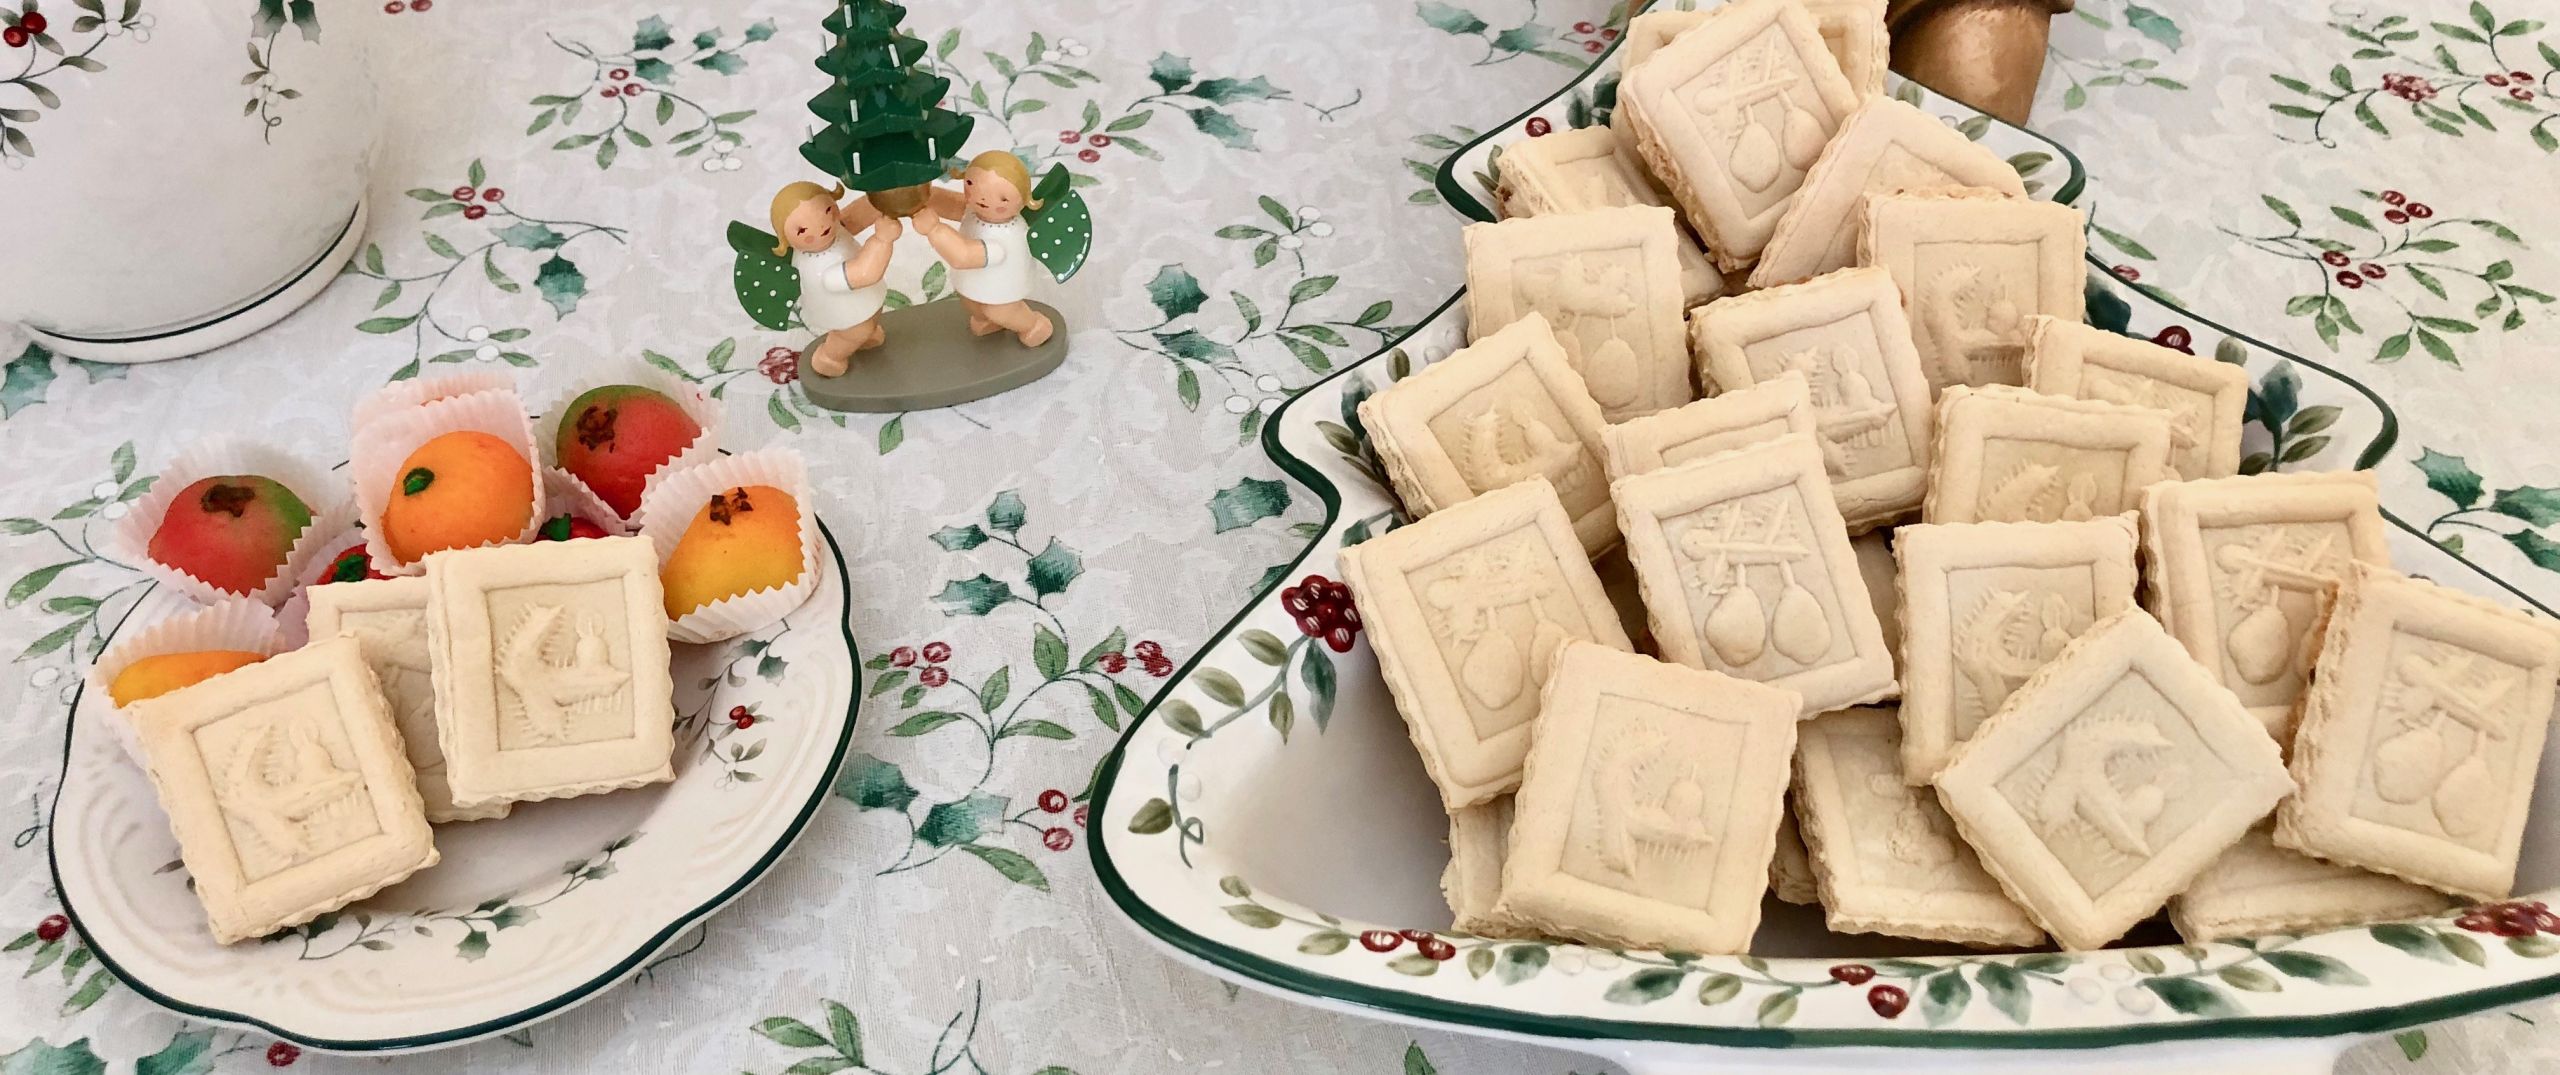 Springerle Cookies Recipe
 Traditional German Christmas Cookies